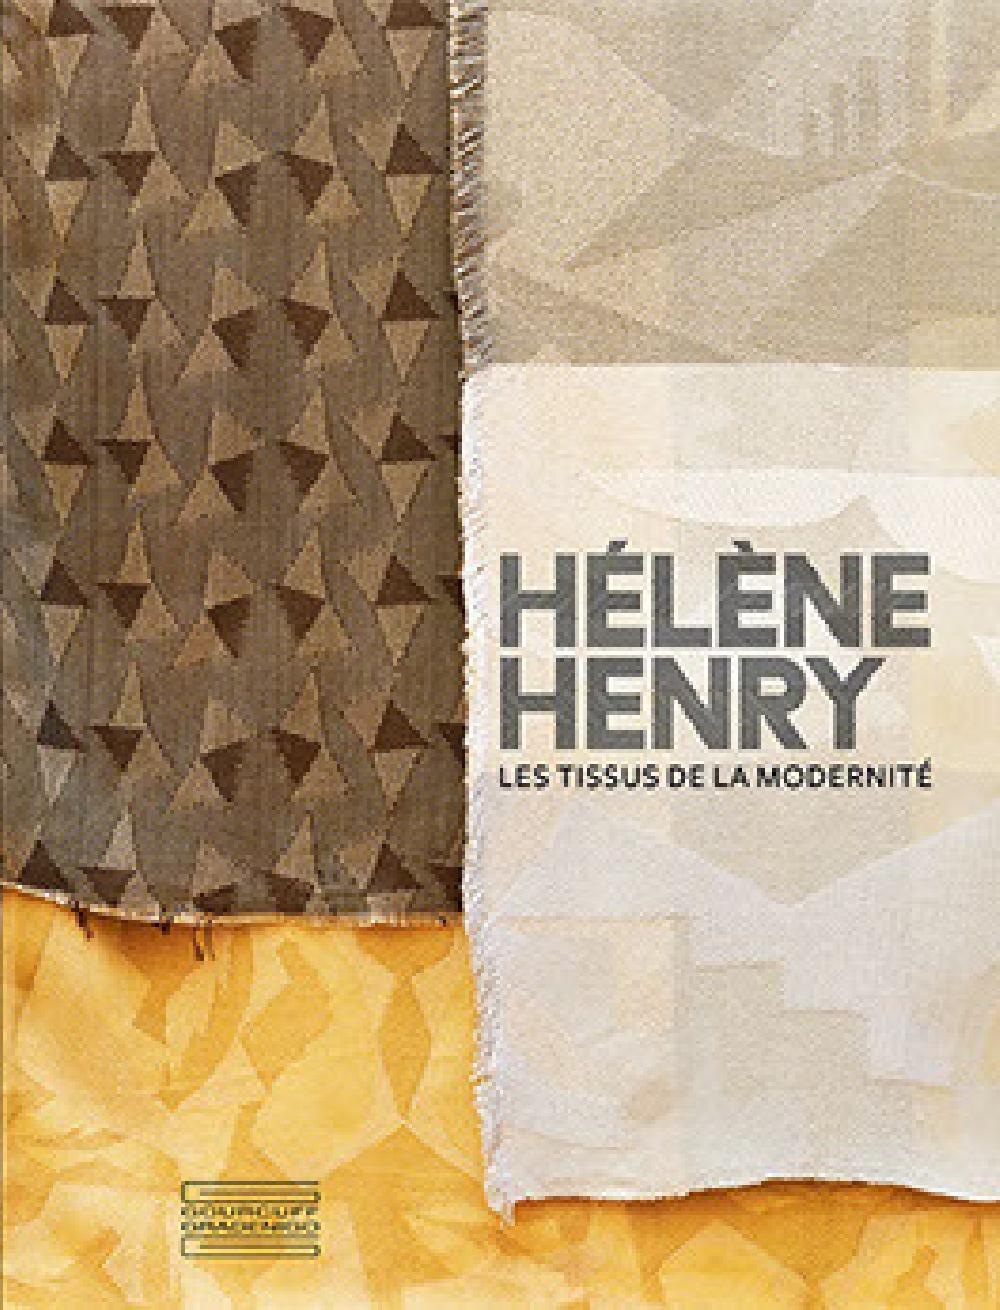 Hélène Henry: Les tissus de la modernité